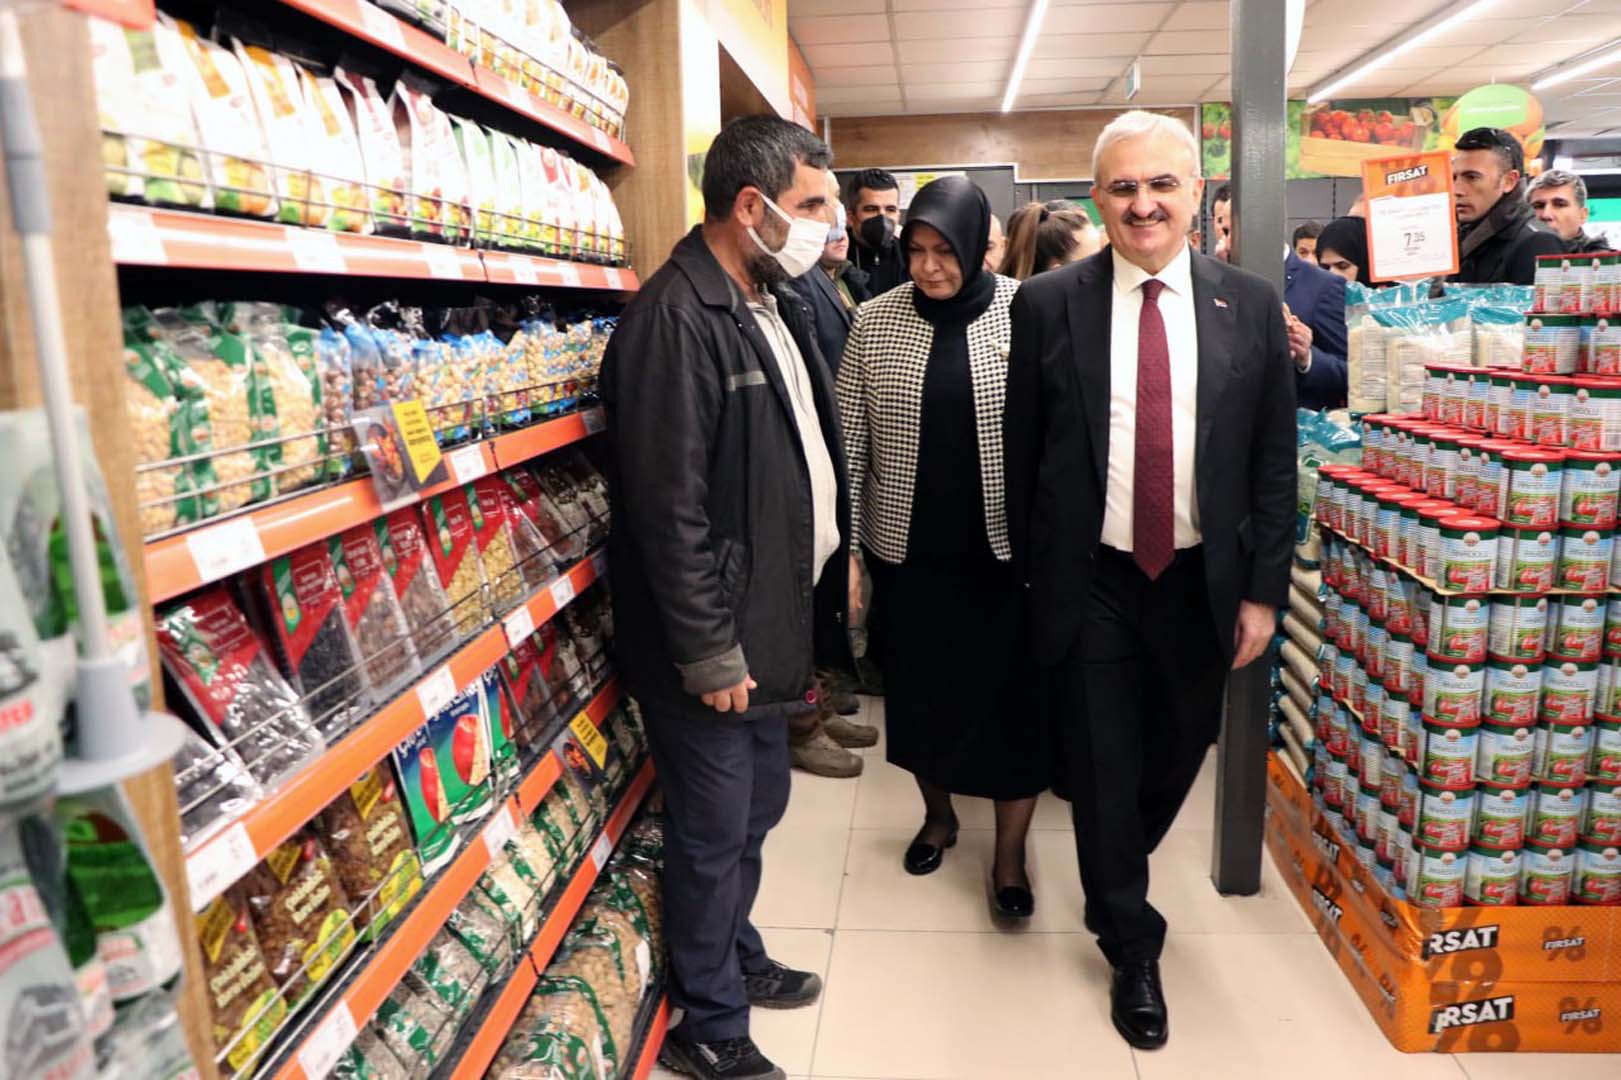 Tarım Kredi Kooperatif Market’in Diyarbakır şubesi açıldı! Vatandaş sıvı yağa yöneldi